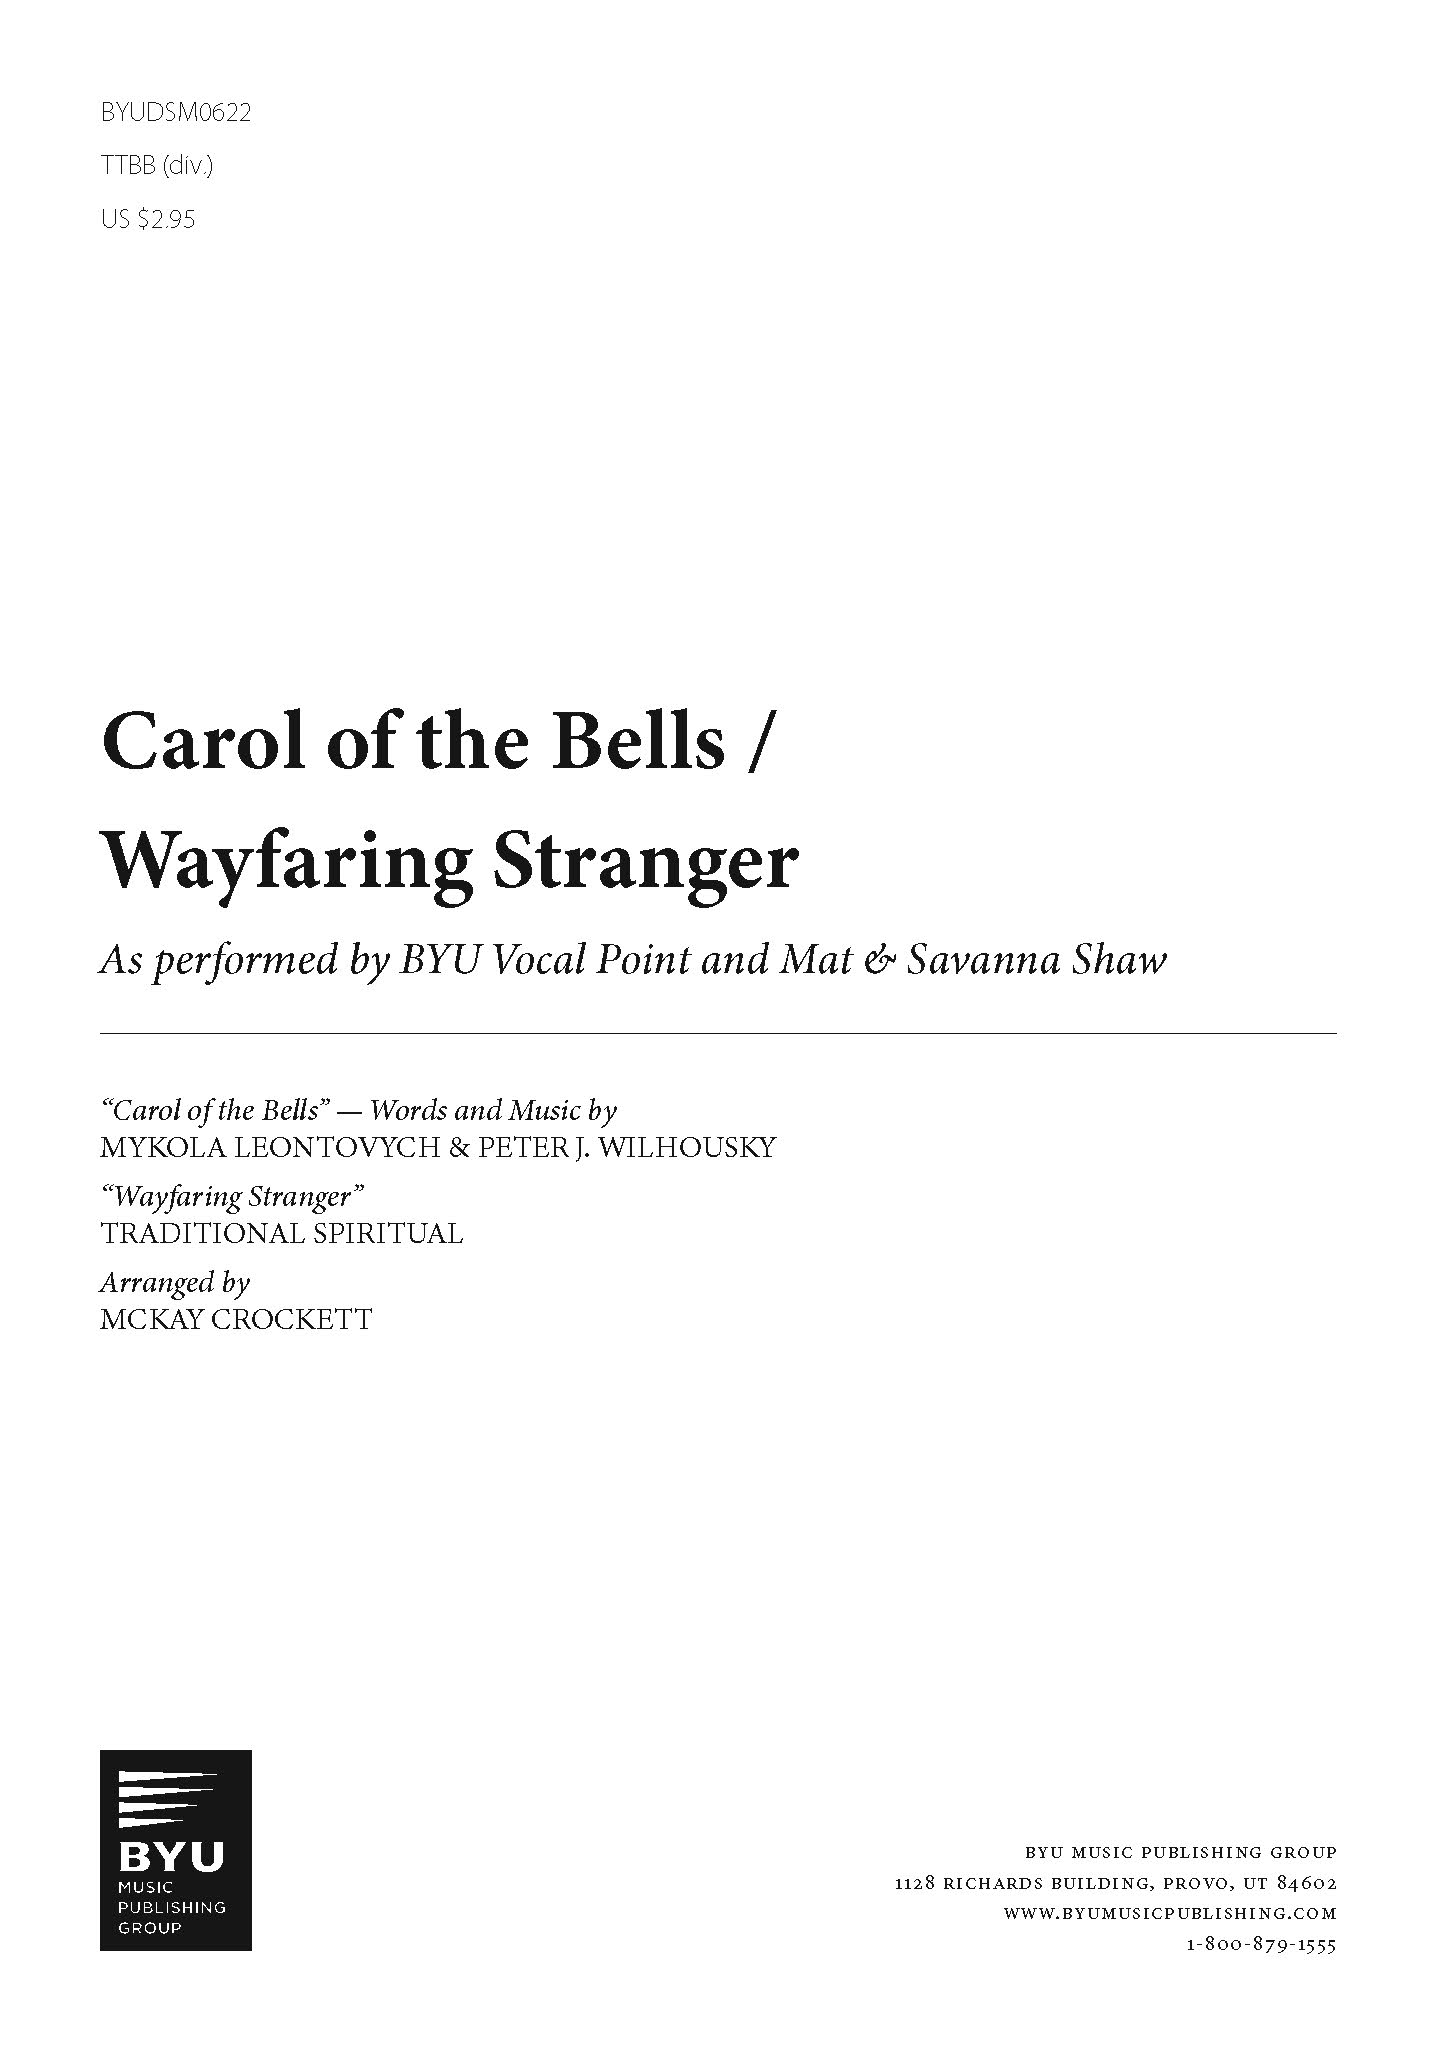 Carol of the Bells/Wayfaring Stranger